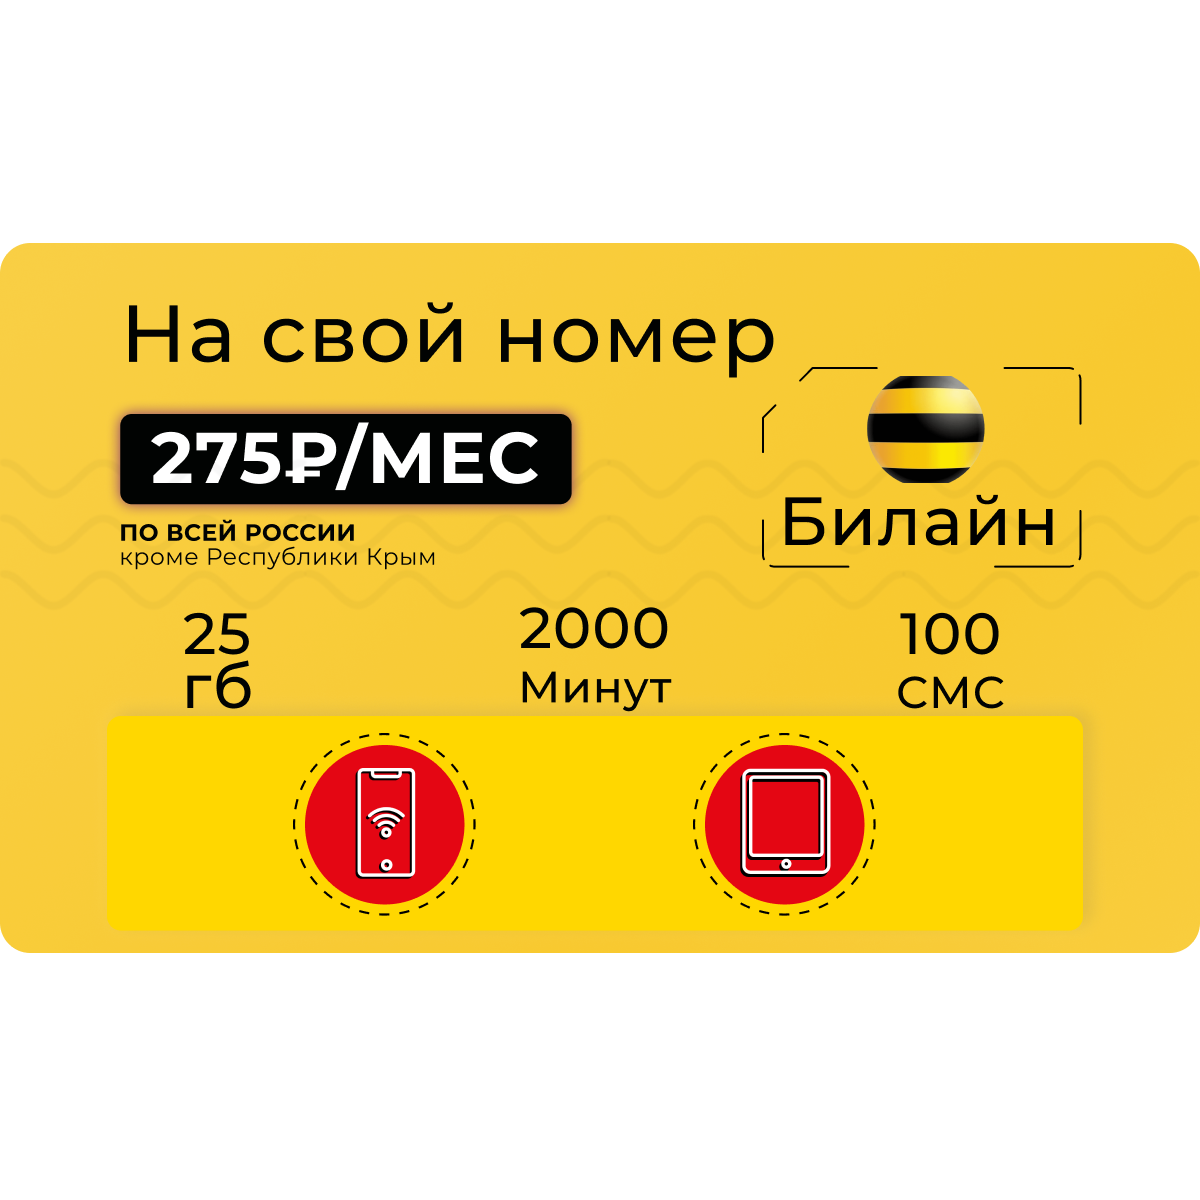 Тариф Билайн Стиль 2000 минут и 25 Гб интернета на свой номер - купить тариф по выгодной цене | Безлимитик.ру